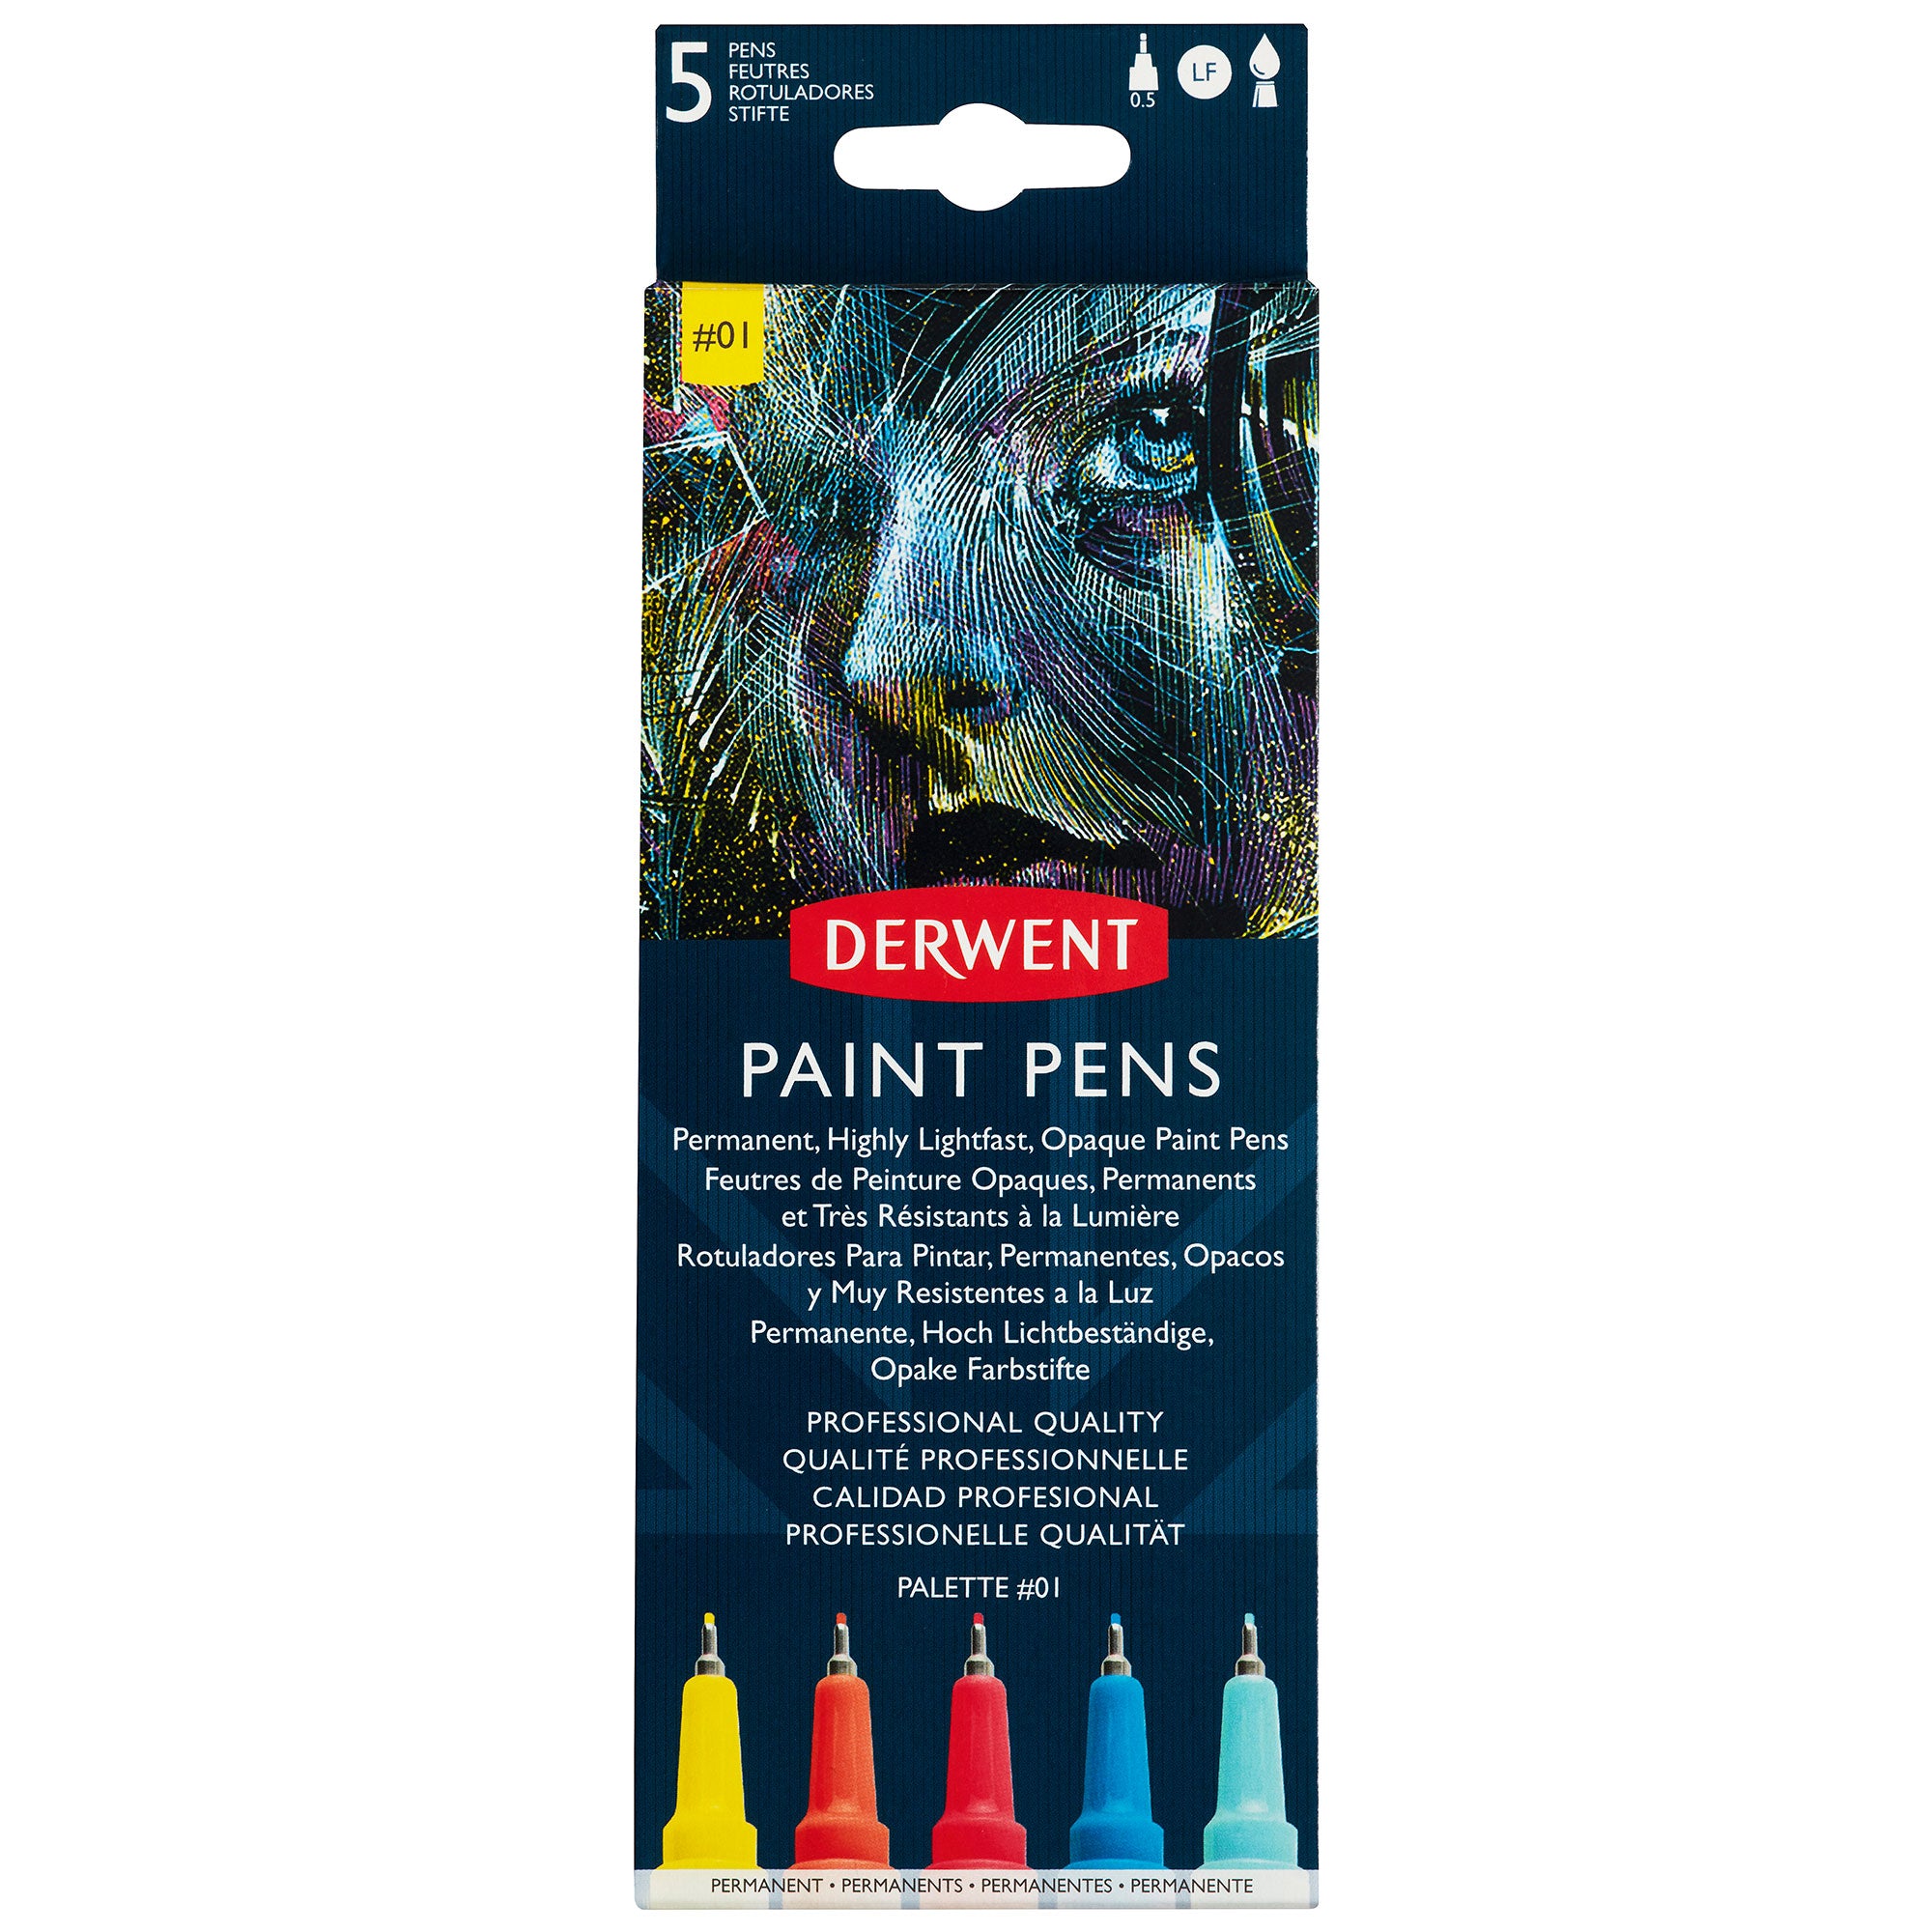 Derwent Paint Pens - Set of 5 #01 - Box